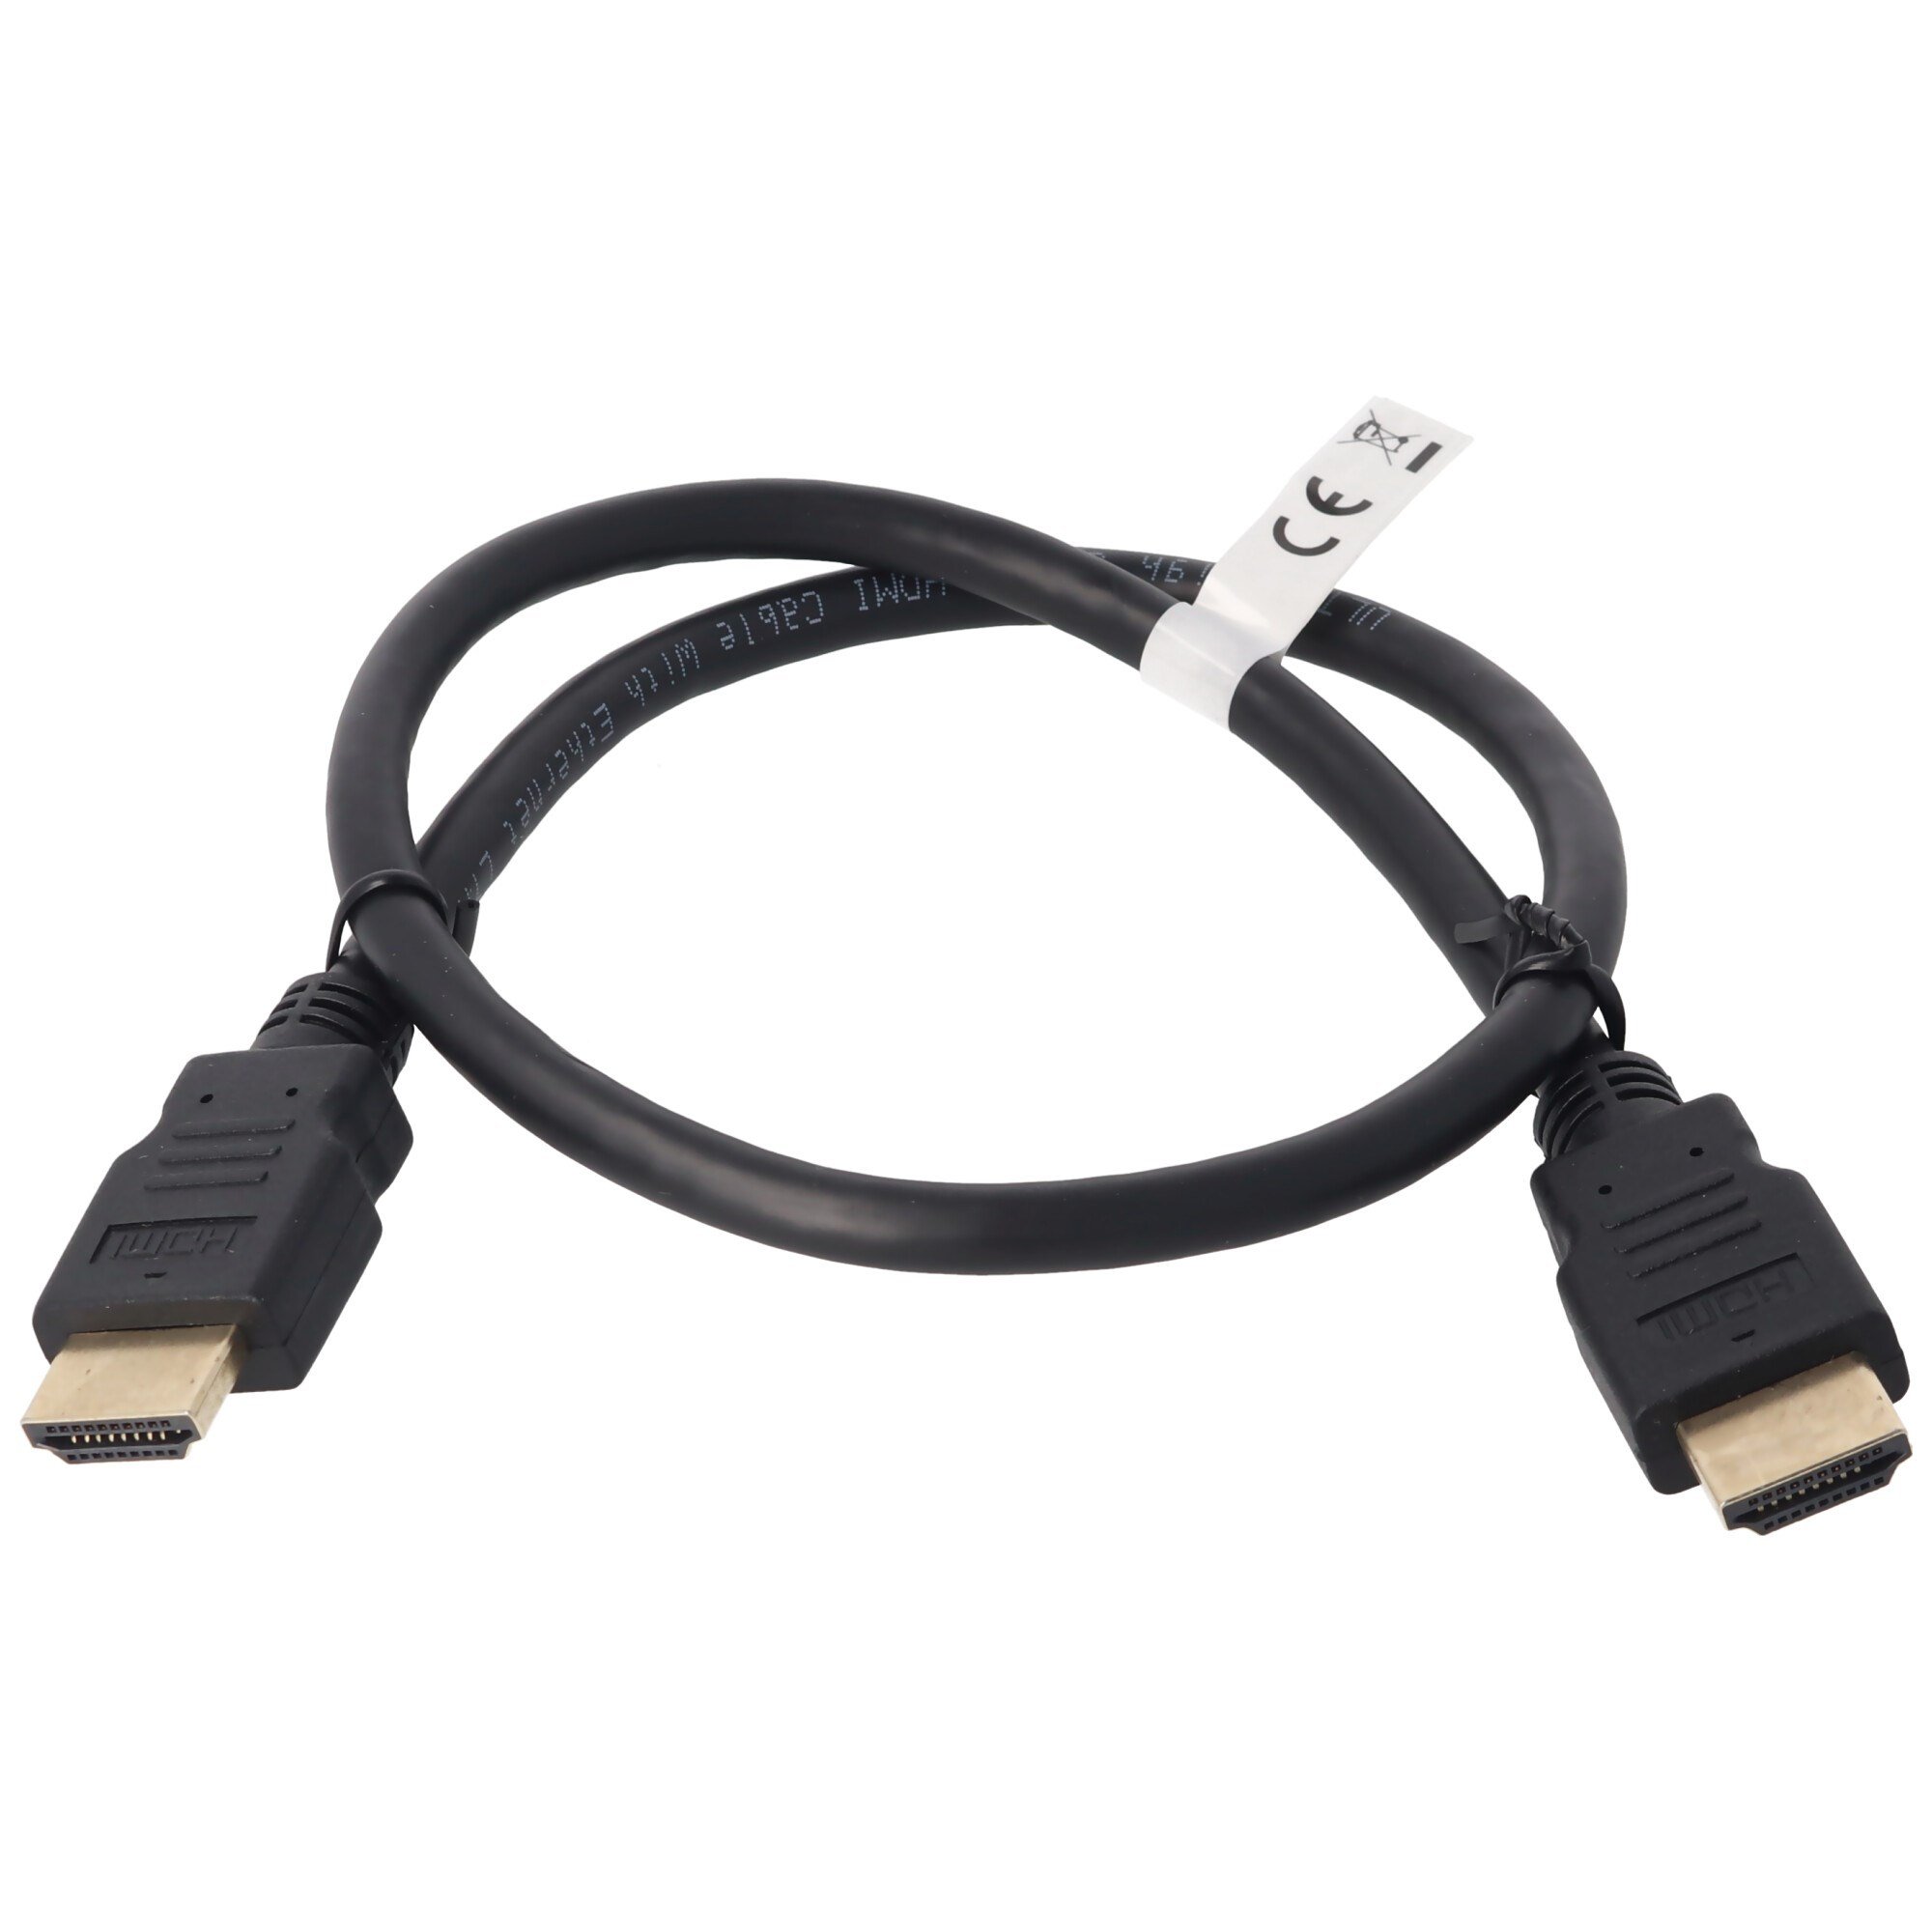 Ethernet ile ultra yüksek hızlı HDMI kablosu, kablo uzunluğu 0,5 metre